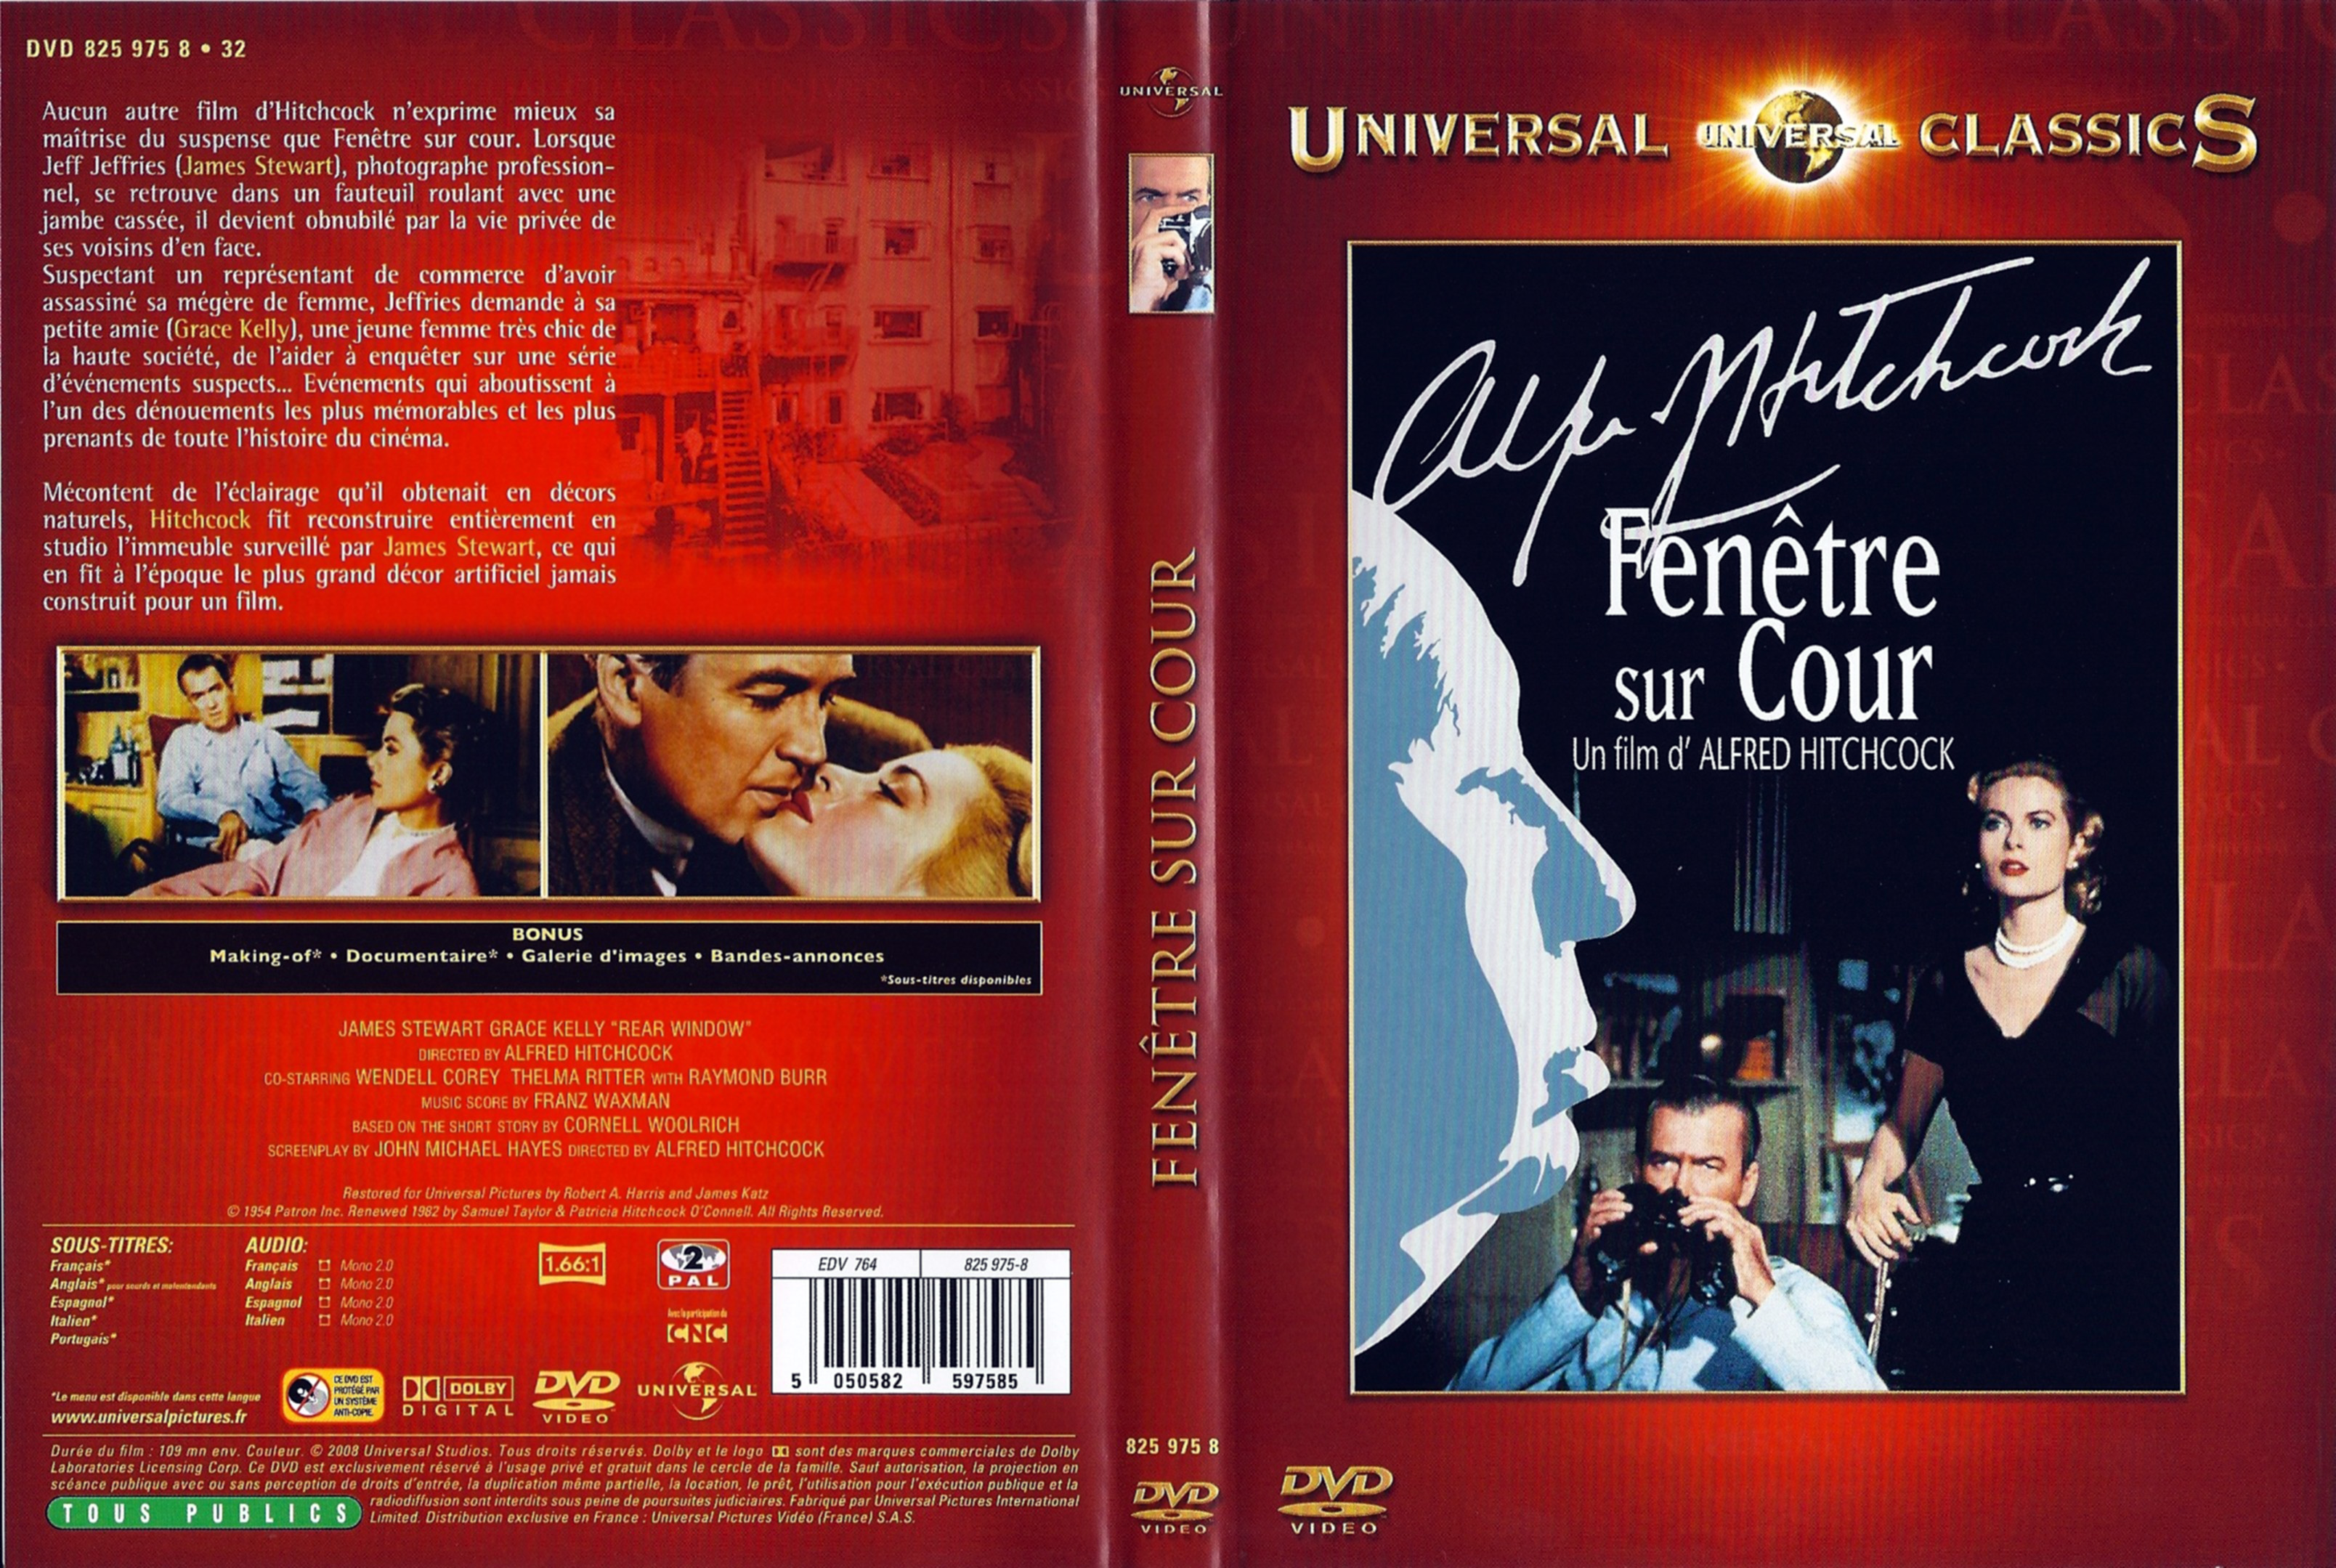 Jaquette DVD Fenetre sur cour (Hitchcock) v4